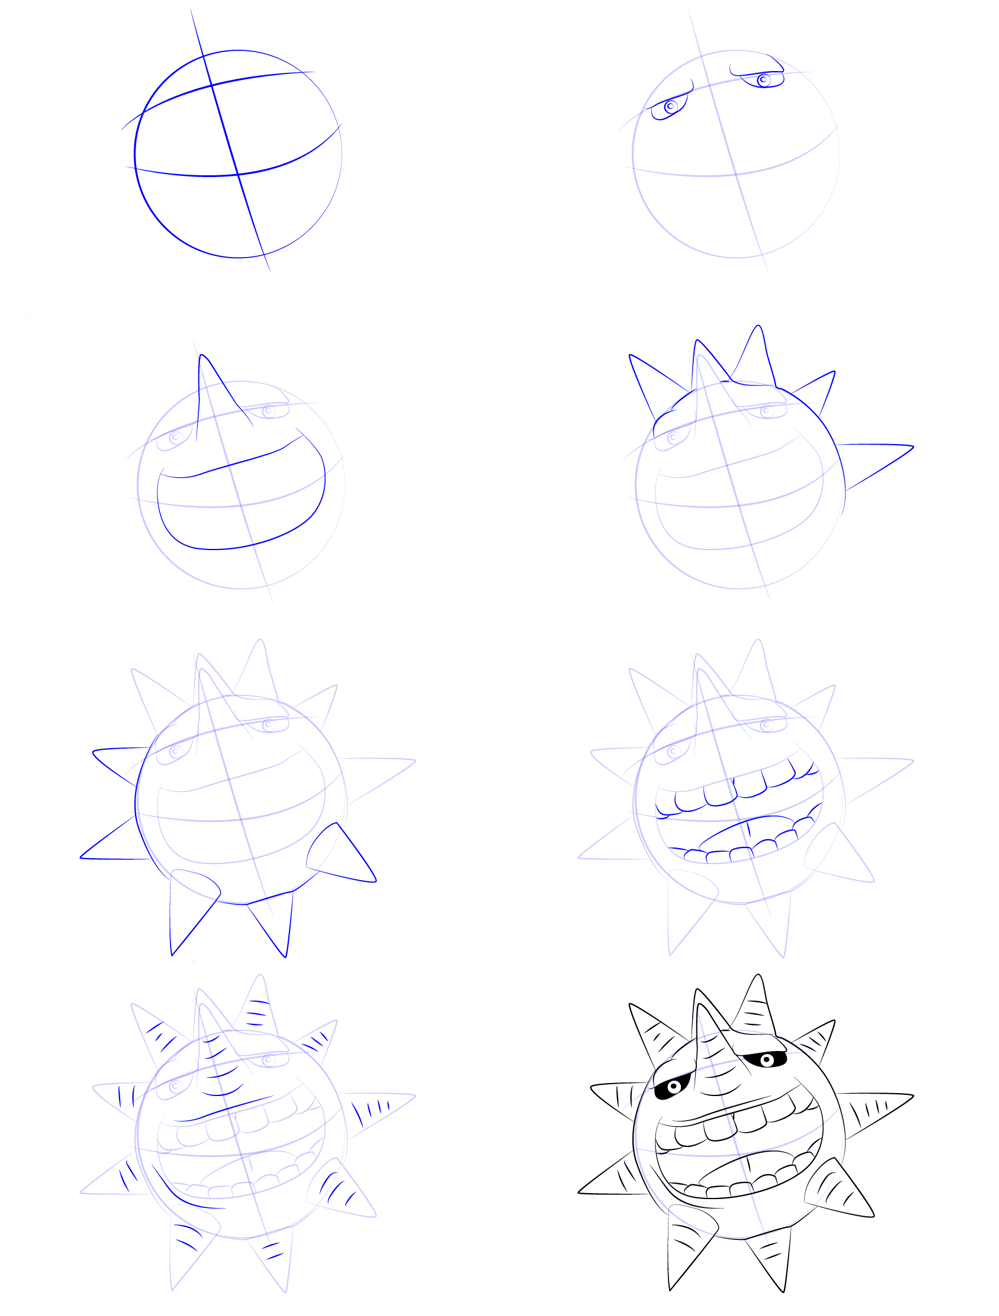 Einfache Sonnenzeichnung zeichnen ideen